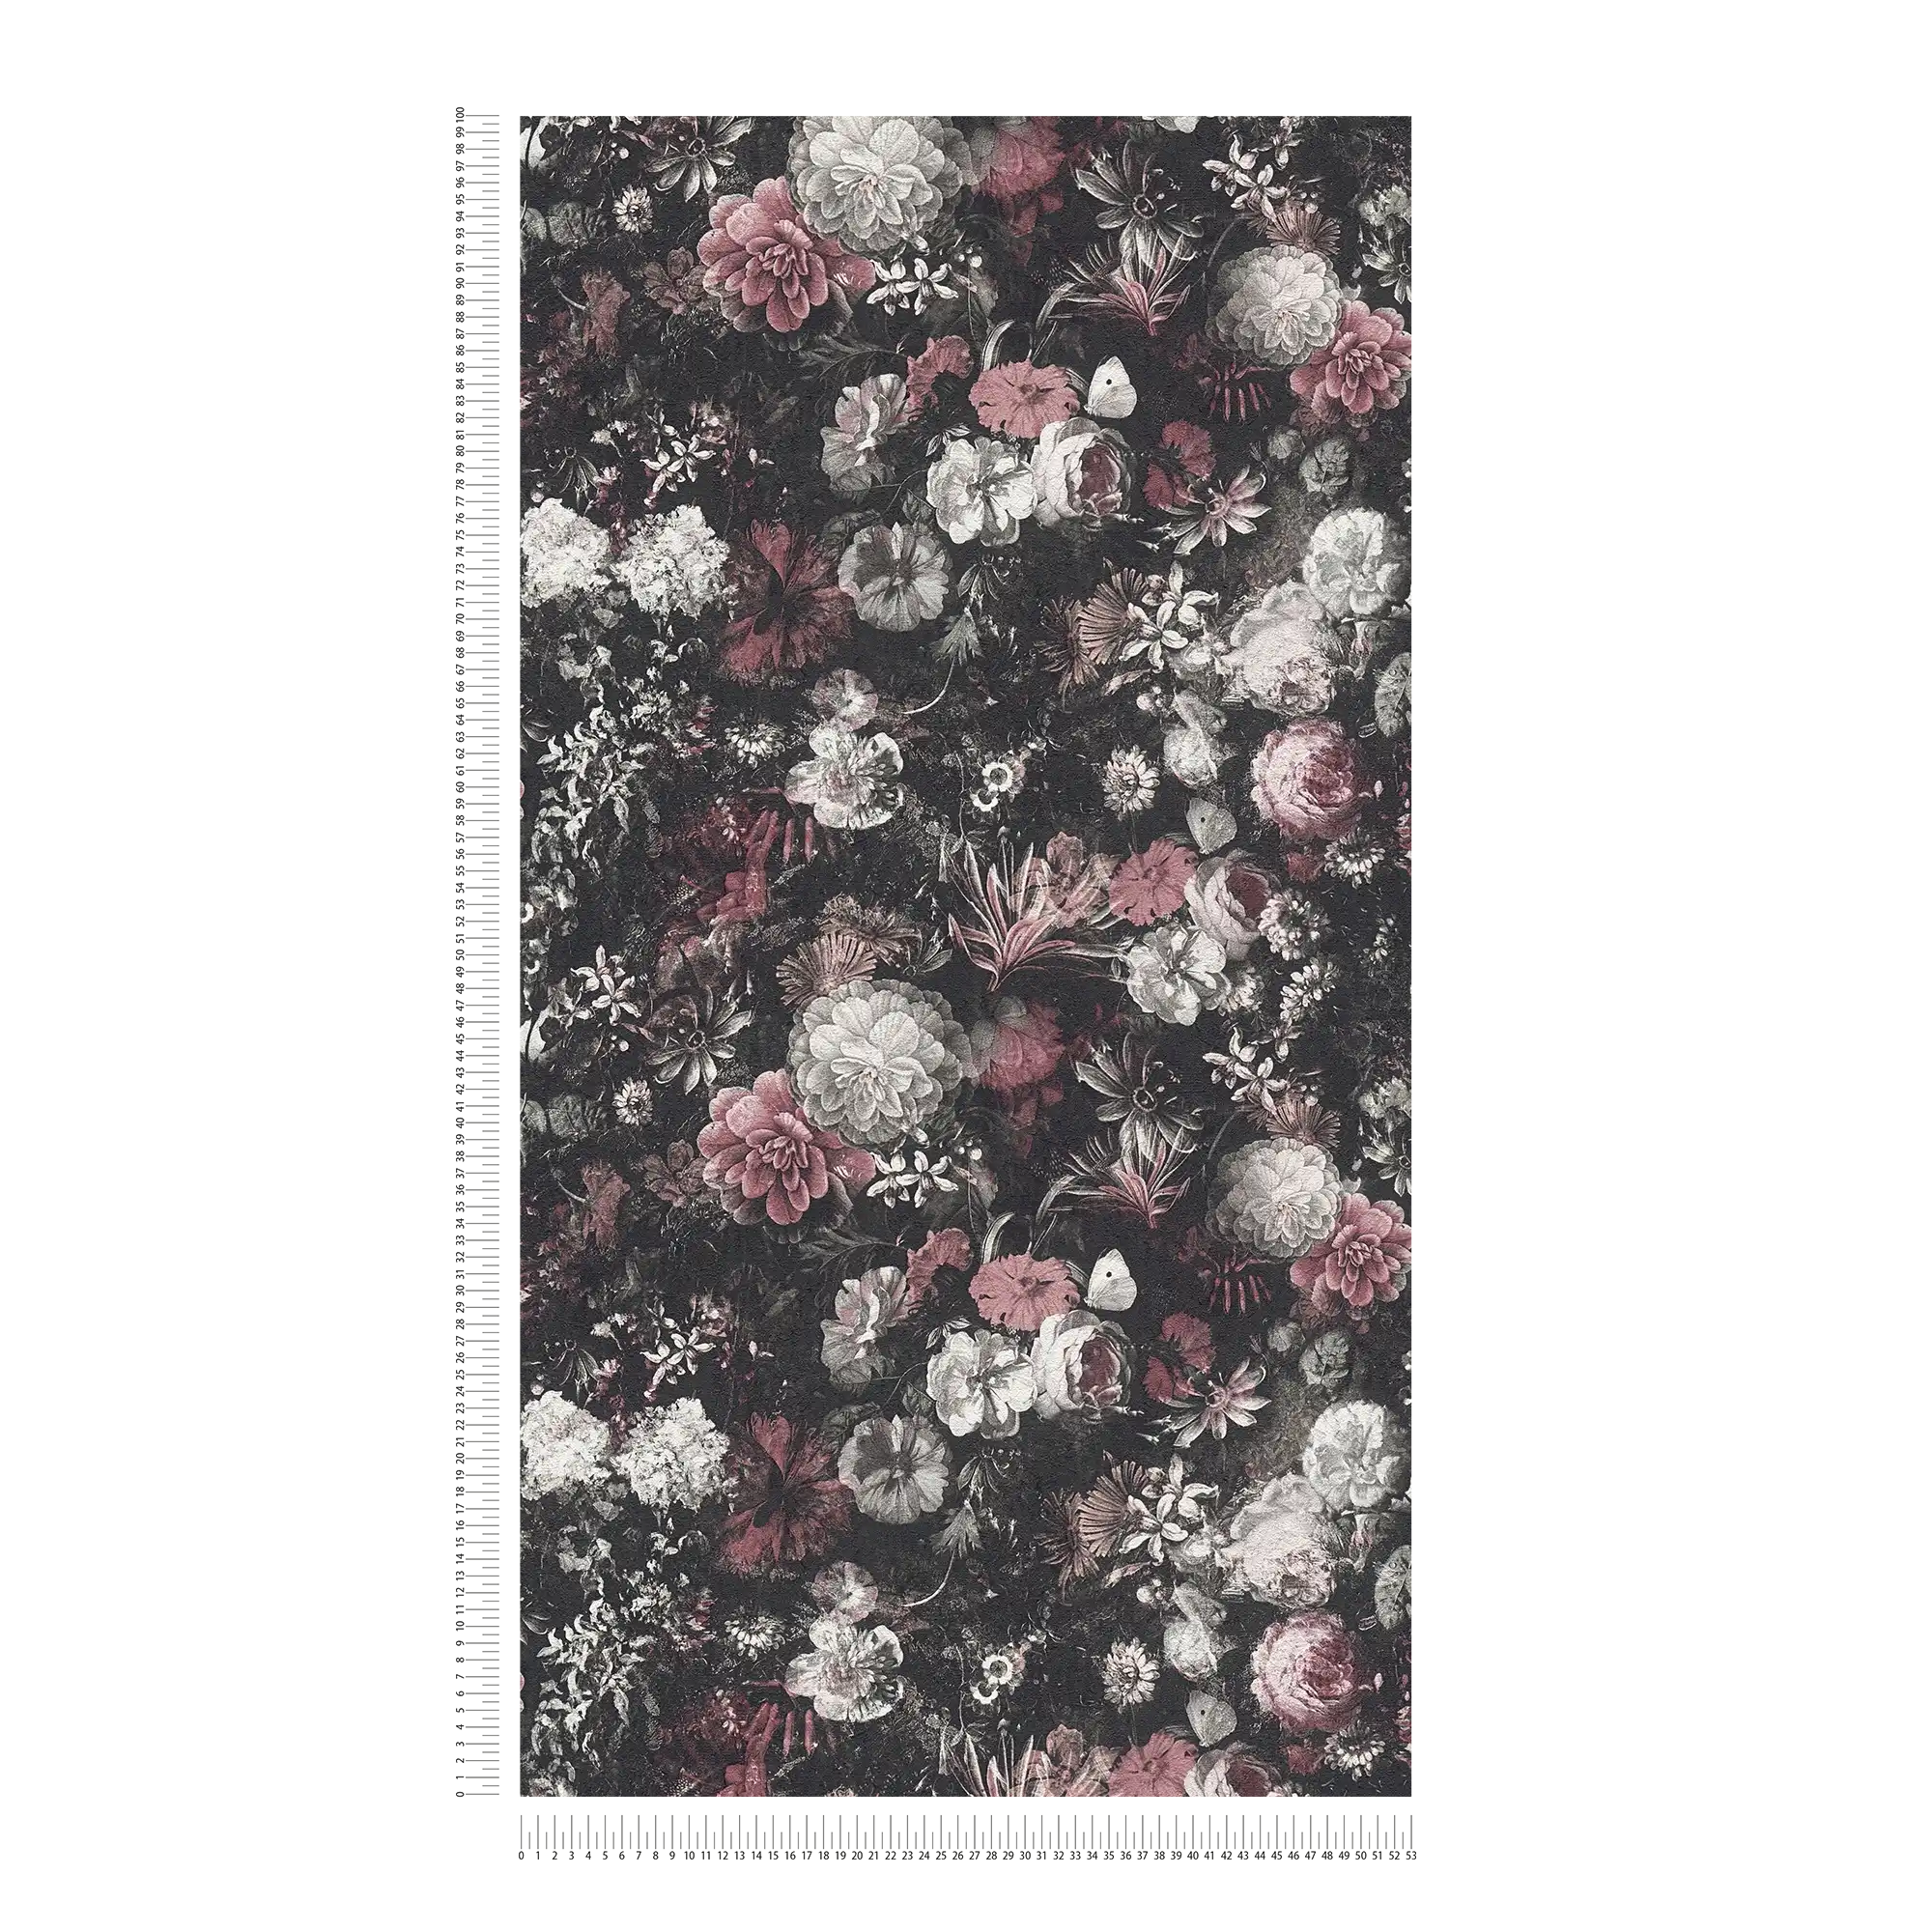             Blumentapete Rosen & Blüten im Vintage Stil – Rot, Schwarz, Weiß
        